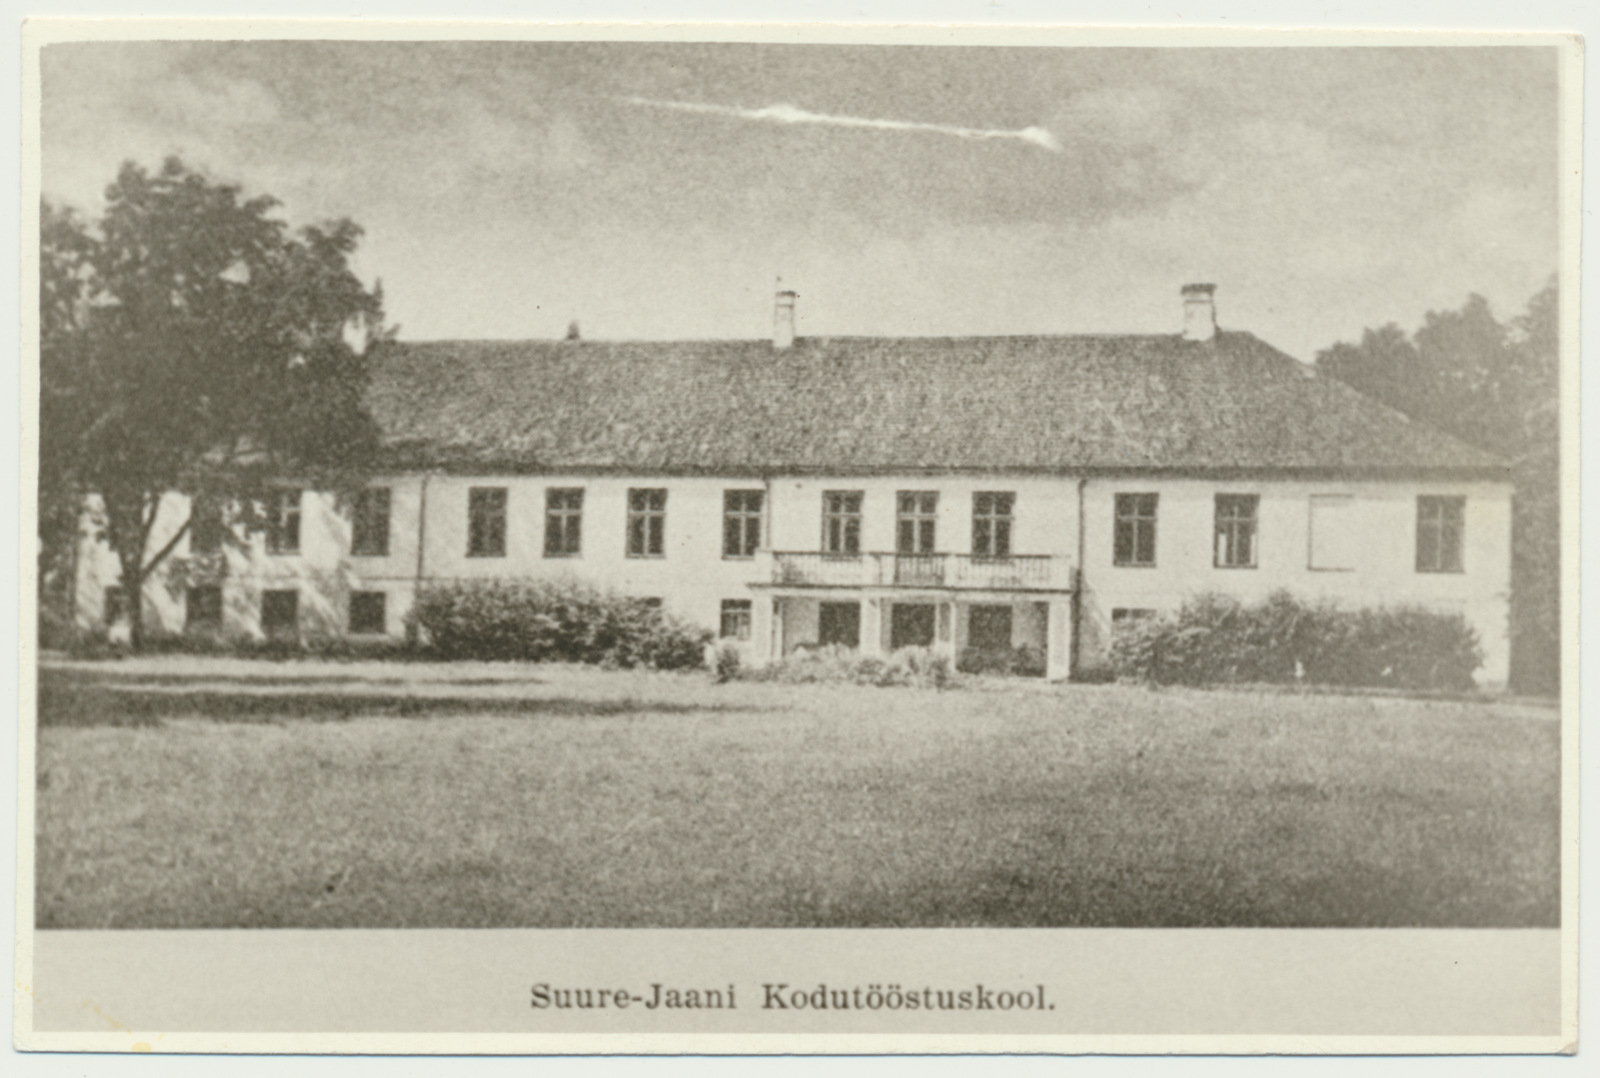 fotokoopia, Suure-Jaani khk, Lõhavere kodutööstuskool (kodumajanduslik täienduskool, endine mõisa peahoone), u 1930